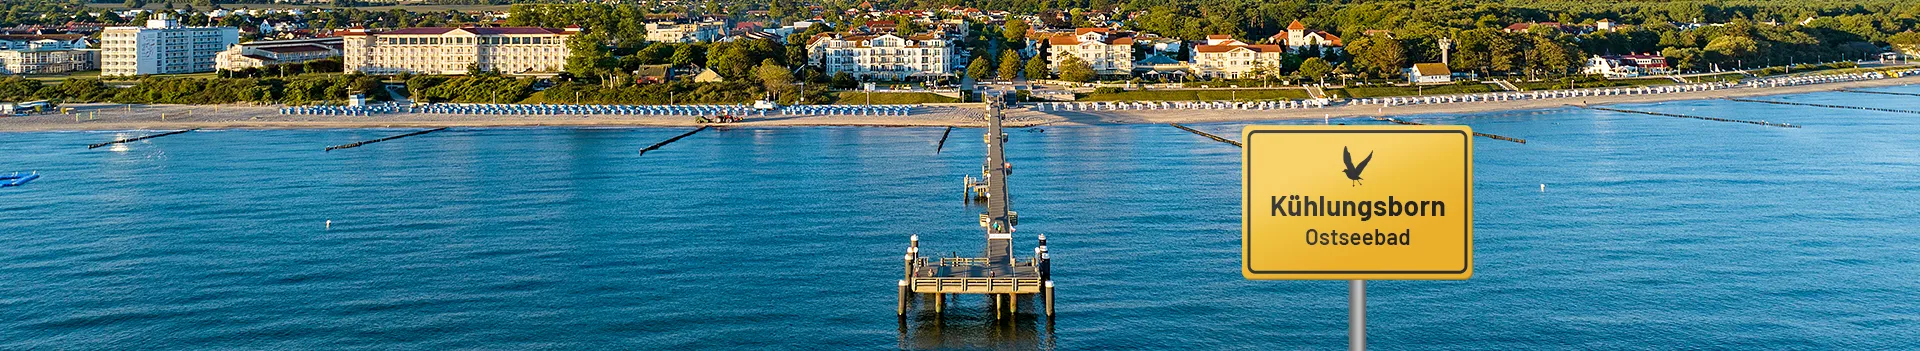 Ostseebad Kühlungsborn – Blick auf die Seebrücke und den Strand